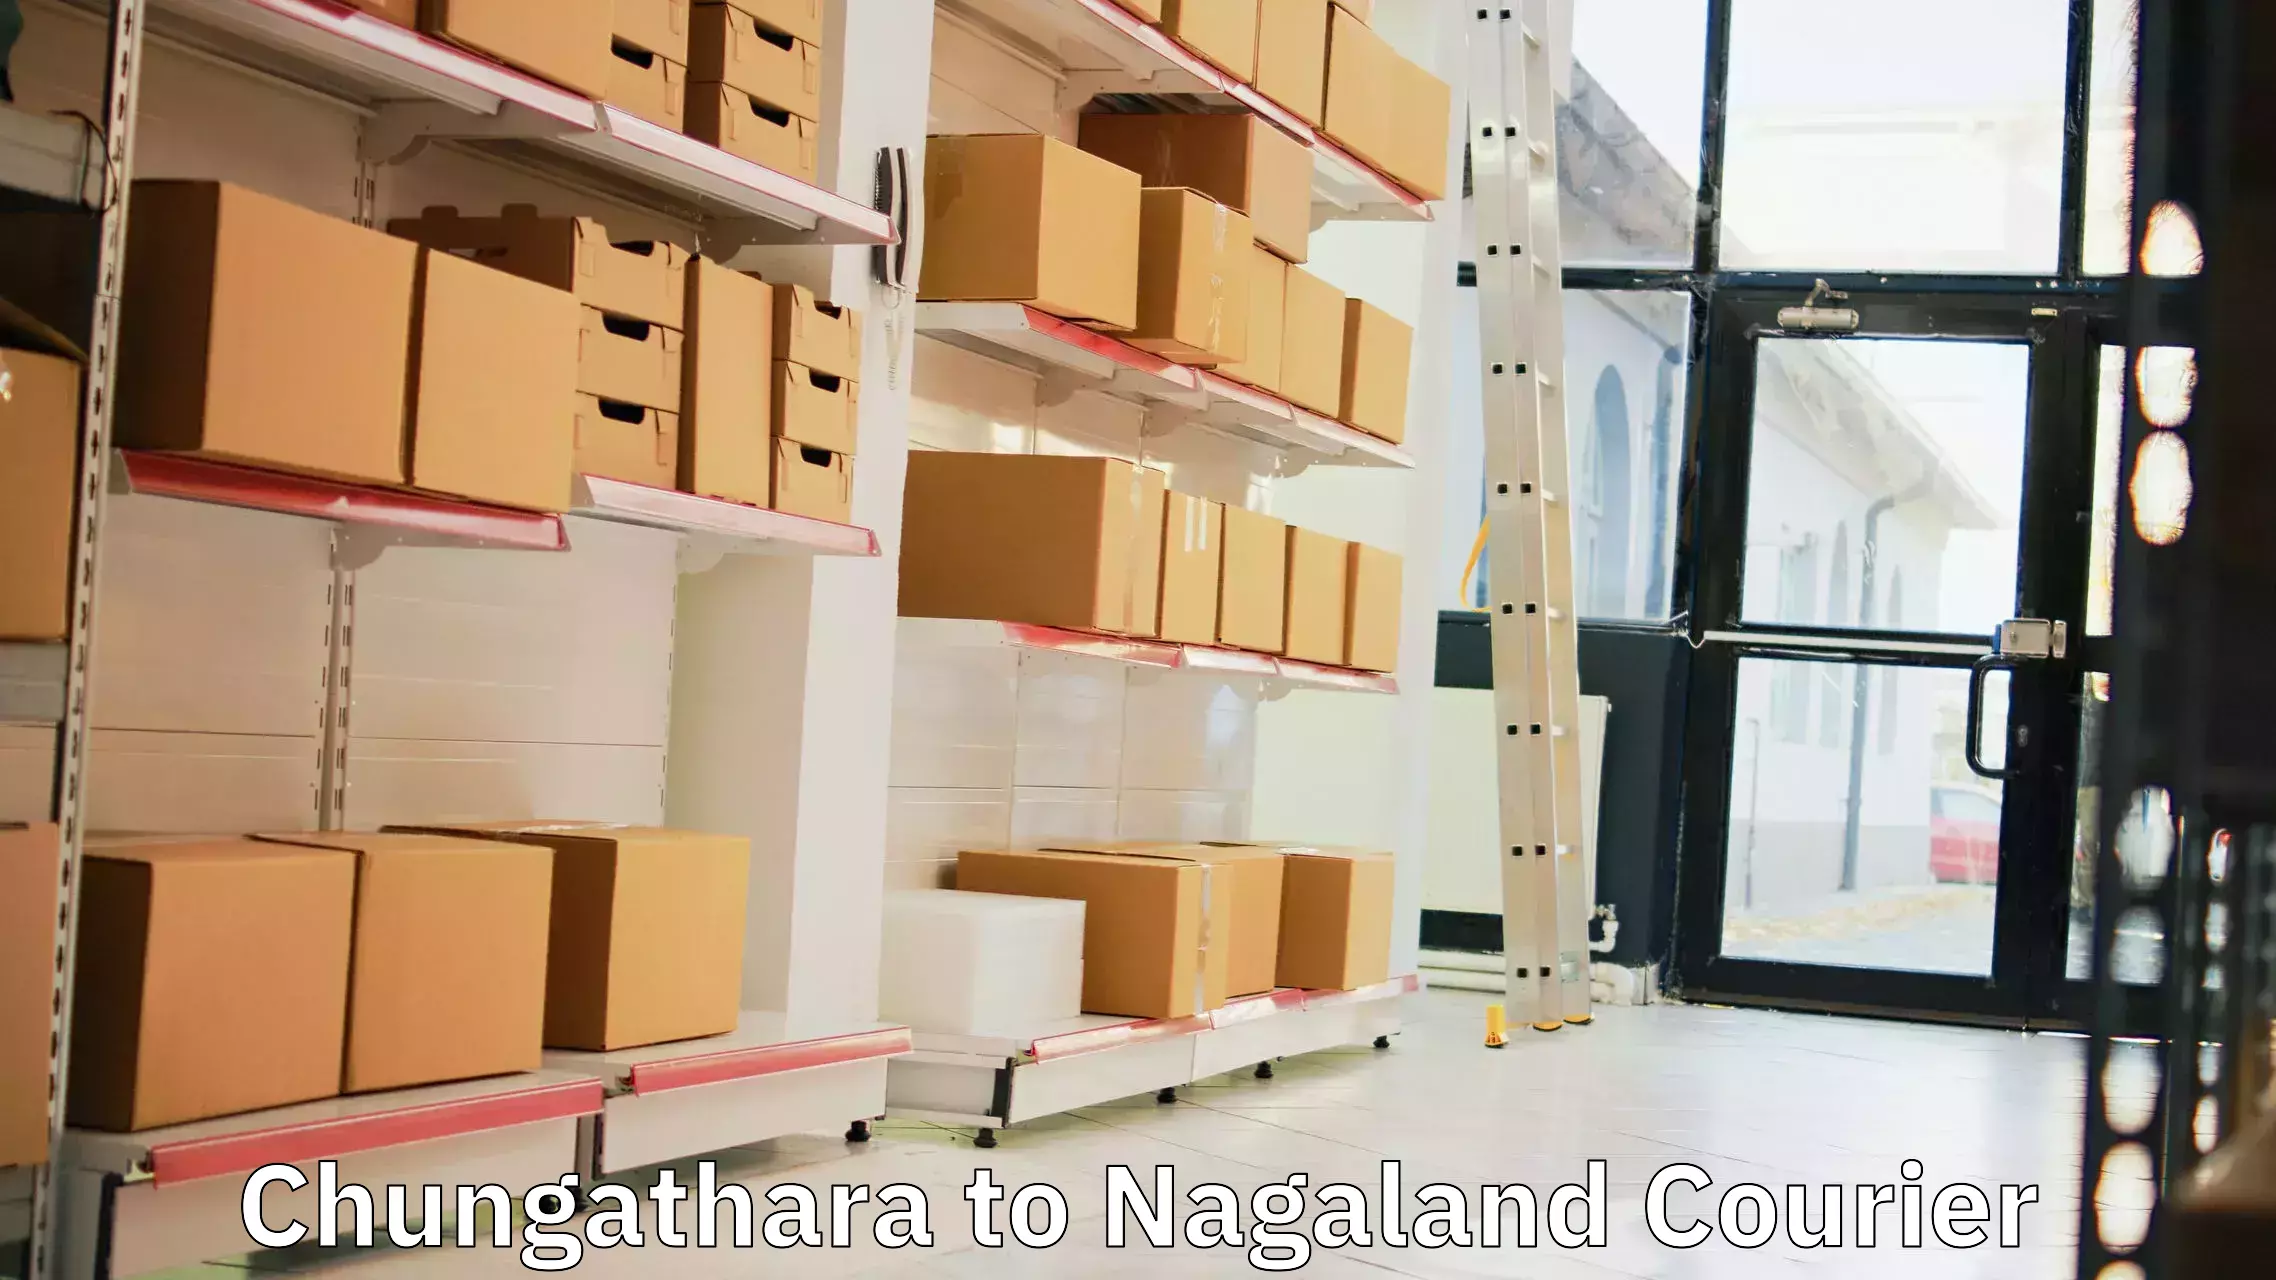 Comprehensive shipping network Chungathara to Nagaland